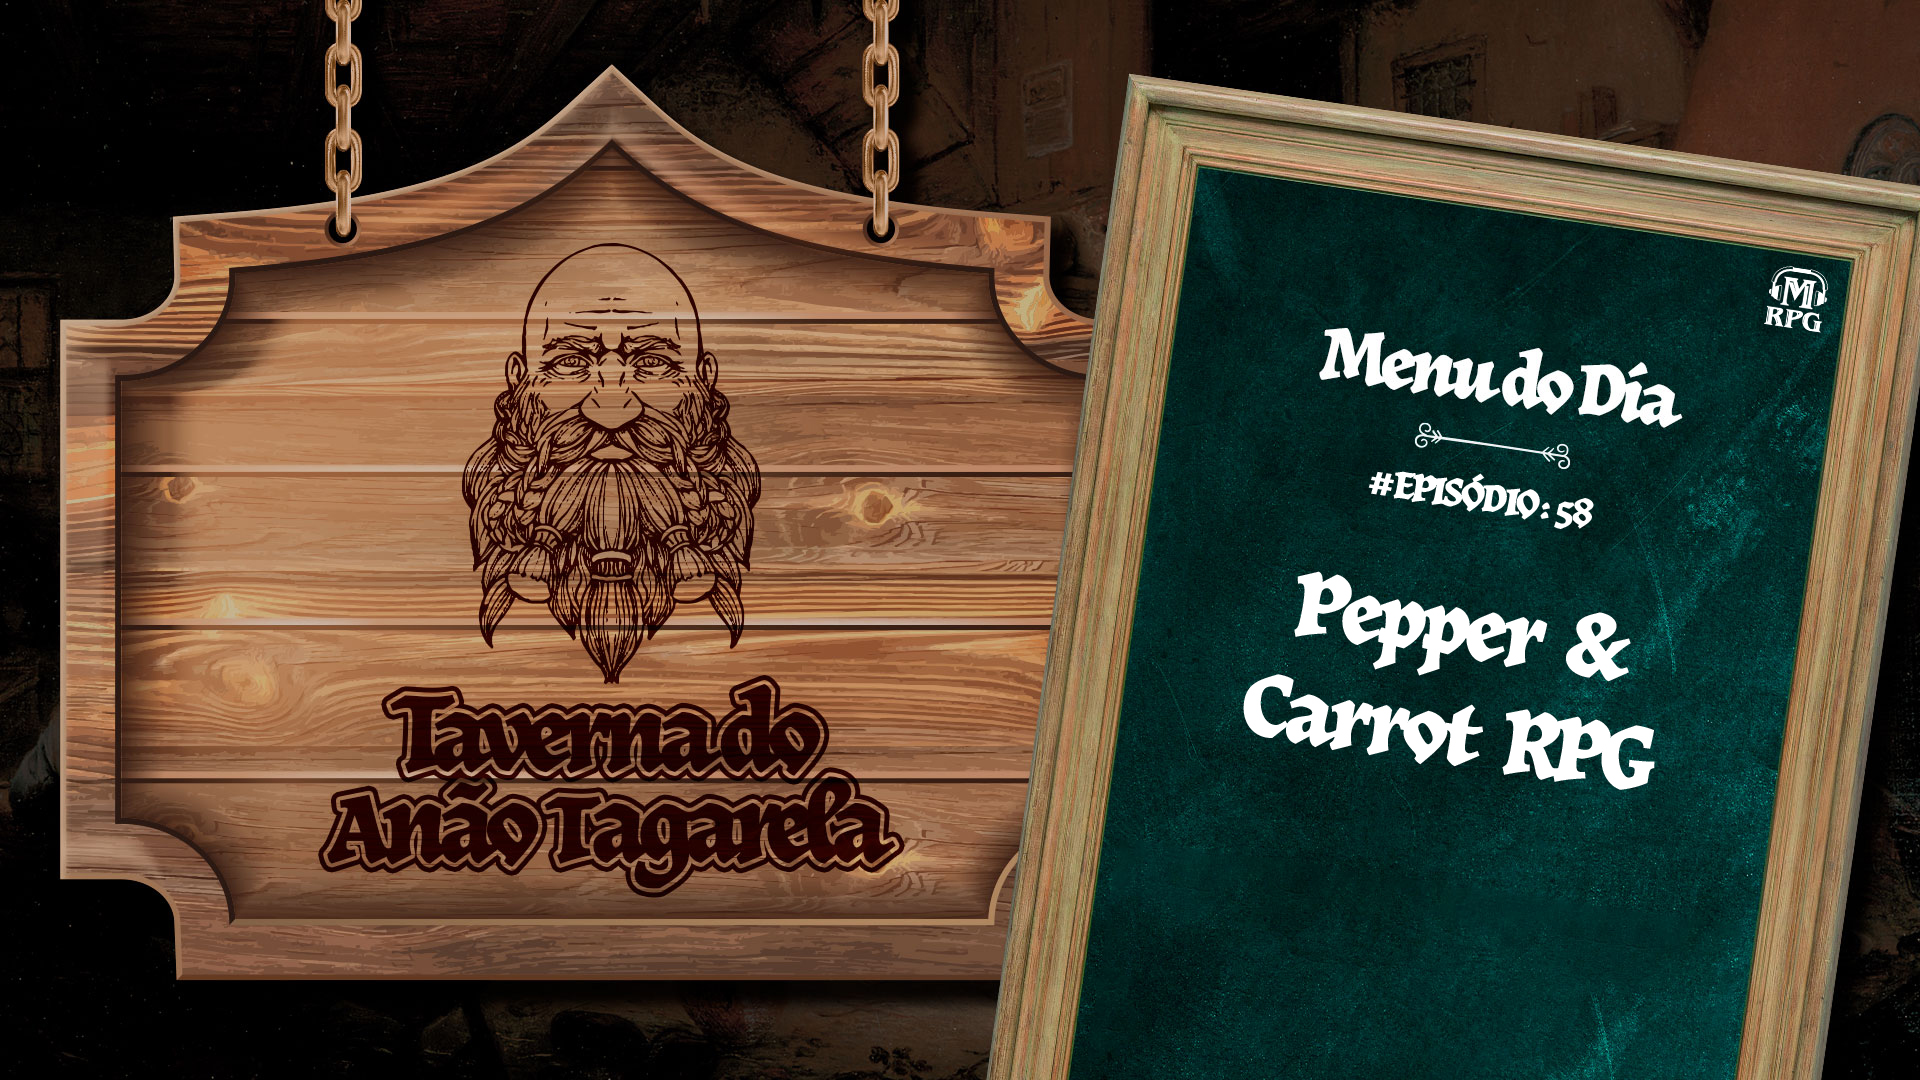 Pepper & Carrot RPG  – Taverna do Anão Tagarela #58